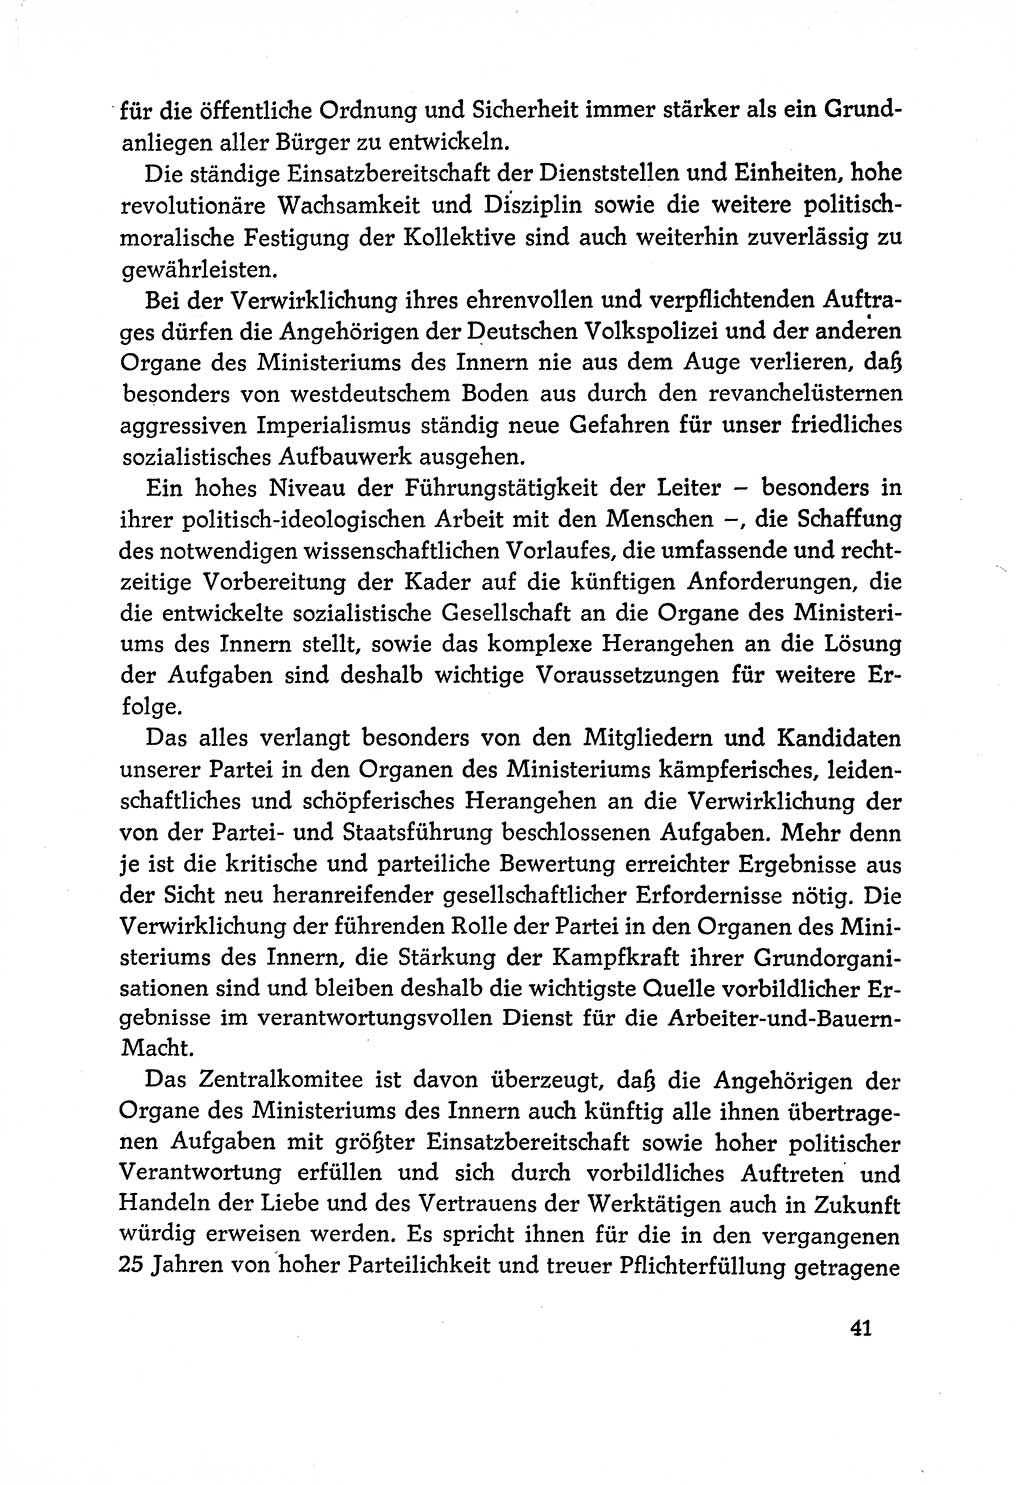 Dokumente der Sozialistischen Einheitspartei Deutschlands (SED) [Deutsche Demokratische Republik (DDR)] 1970-1971, Seite 41 (Dok. SED DDR 1970-1971, S. 41)